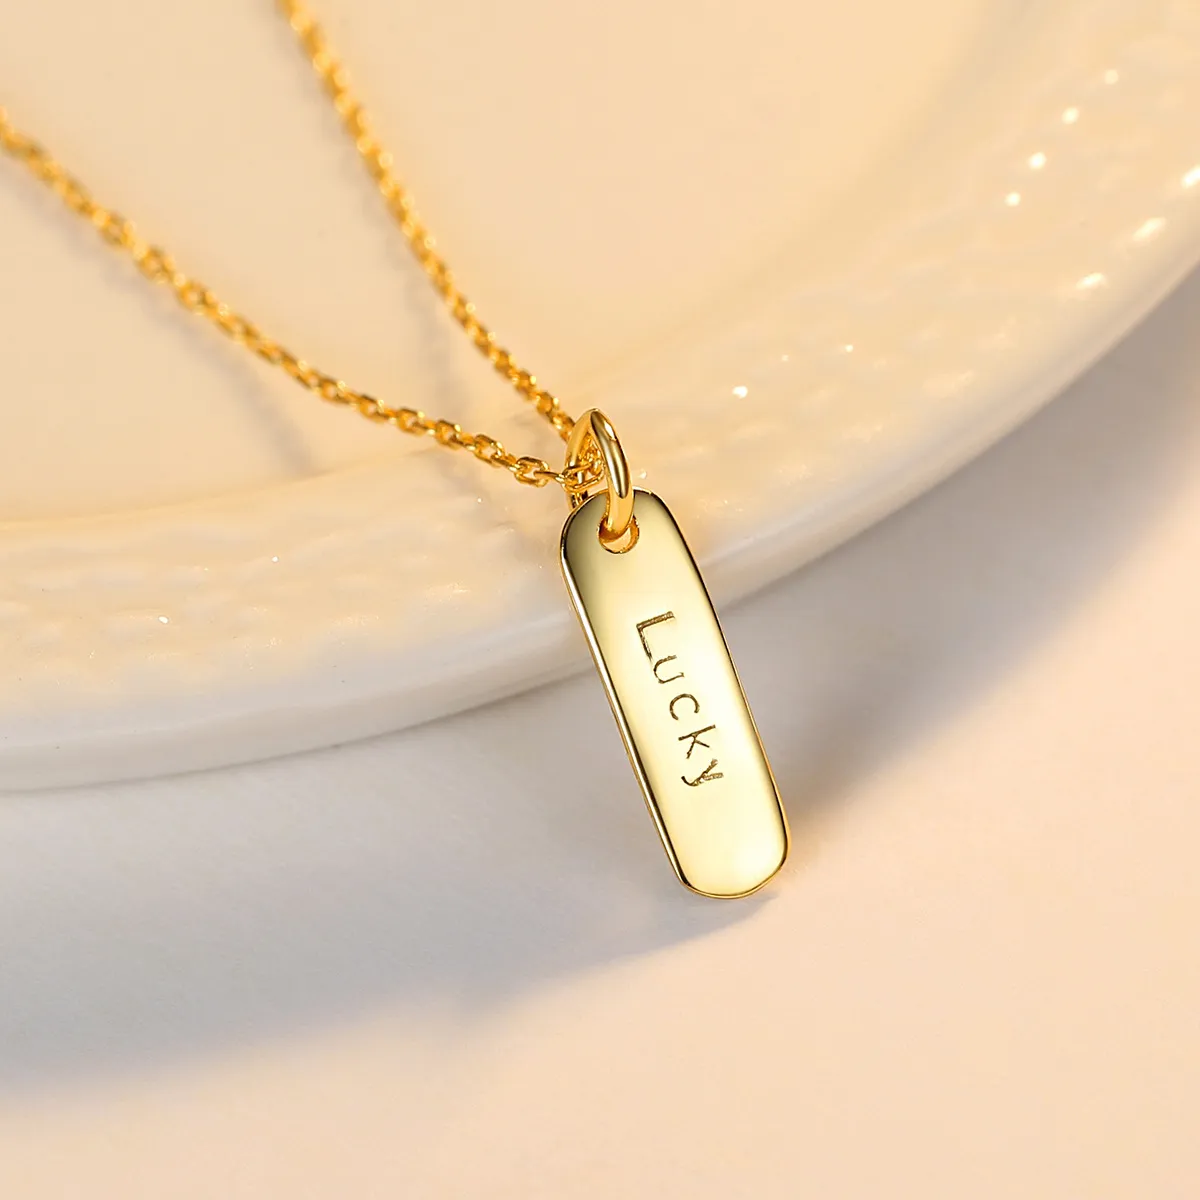 Brief Glück Anhänger Halskette Frauen Luxusmarke s925 Silber überzogen 18 Karat Gold Halskette weiblichen Charme Mode Kragen Kette High-End-Schmuck Geburtstagsgeschenk